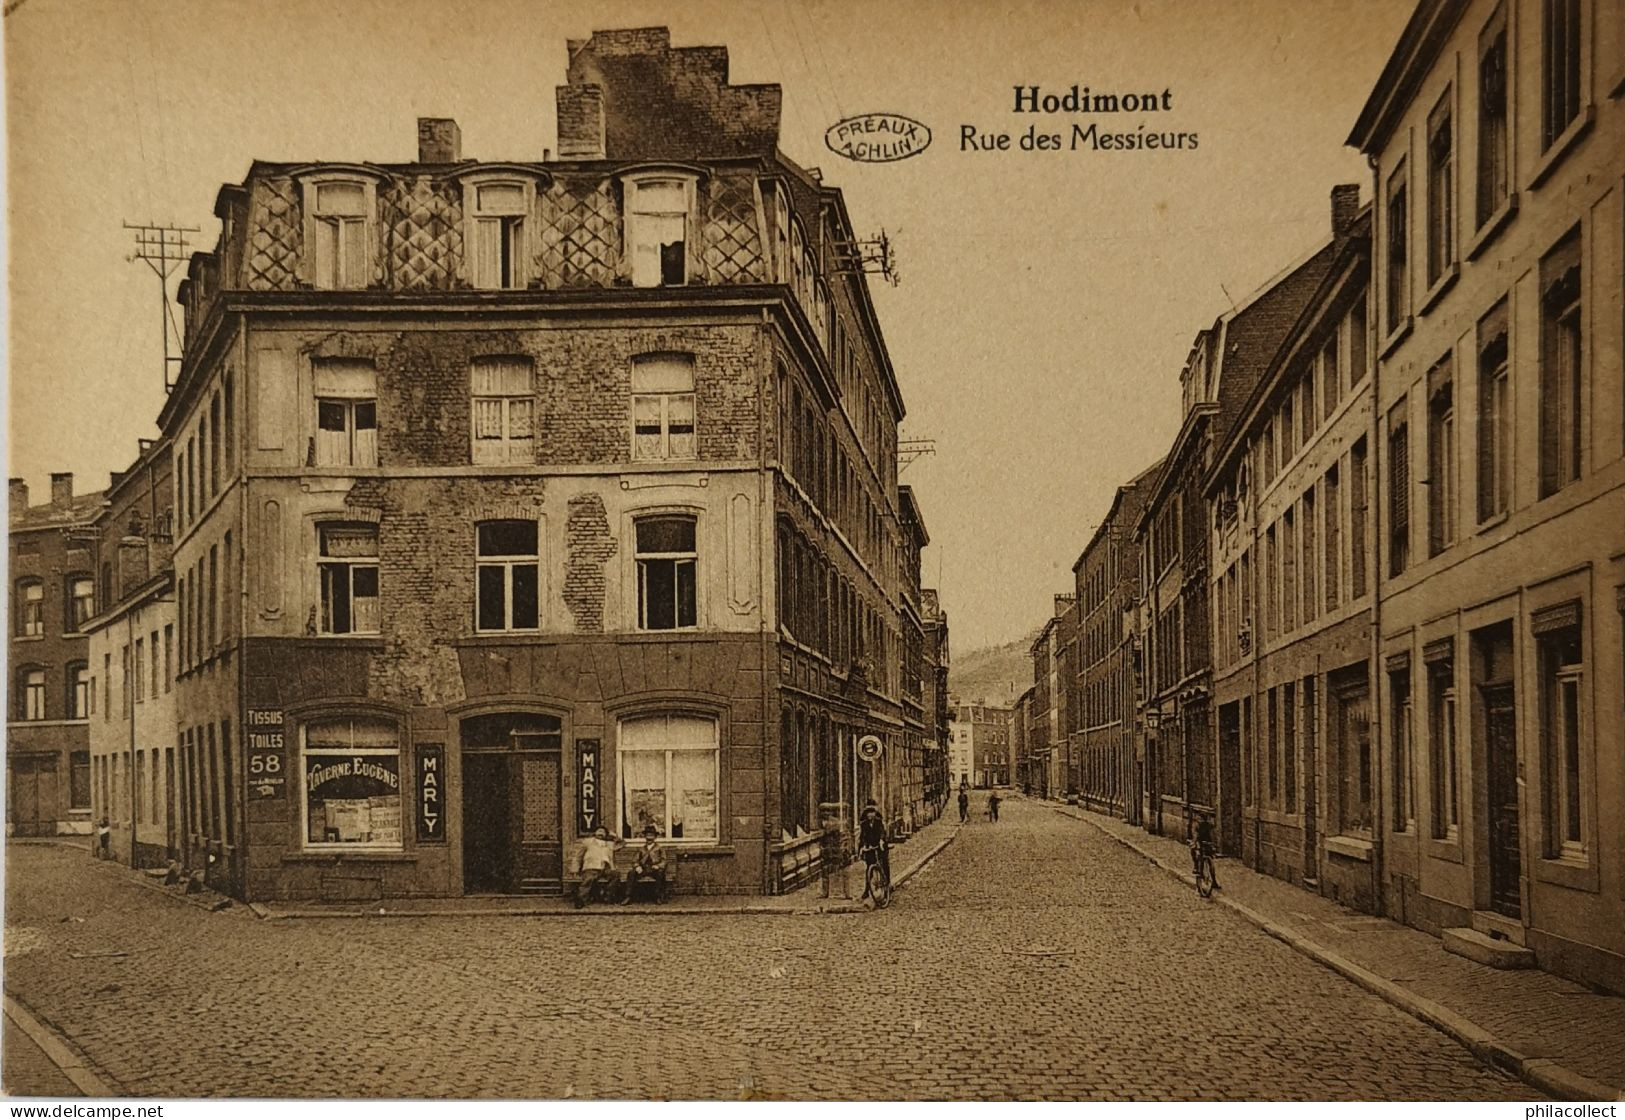 Hodimont (Verviers) Rue Des Messieurs 19?? - Verviers